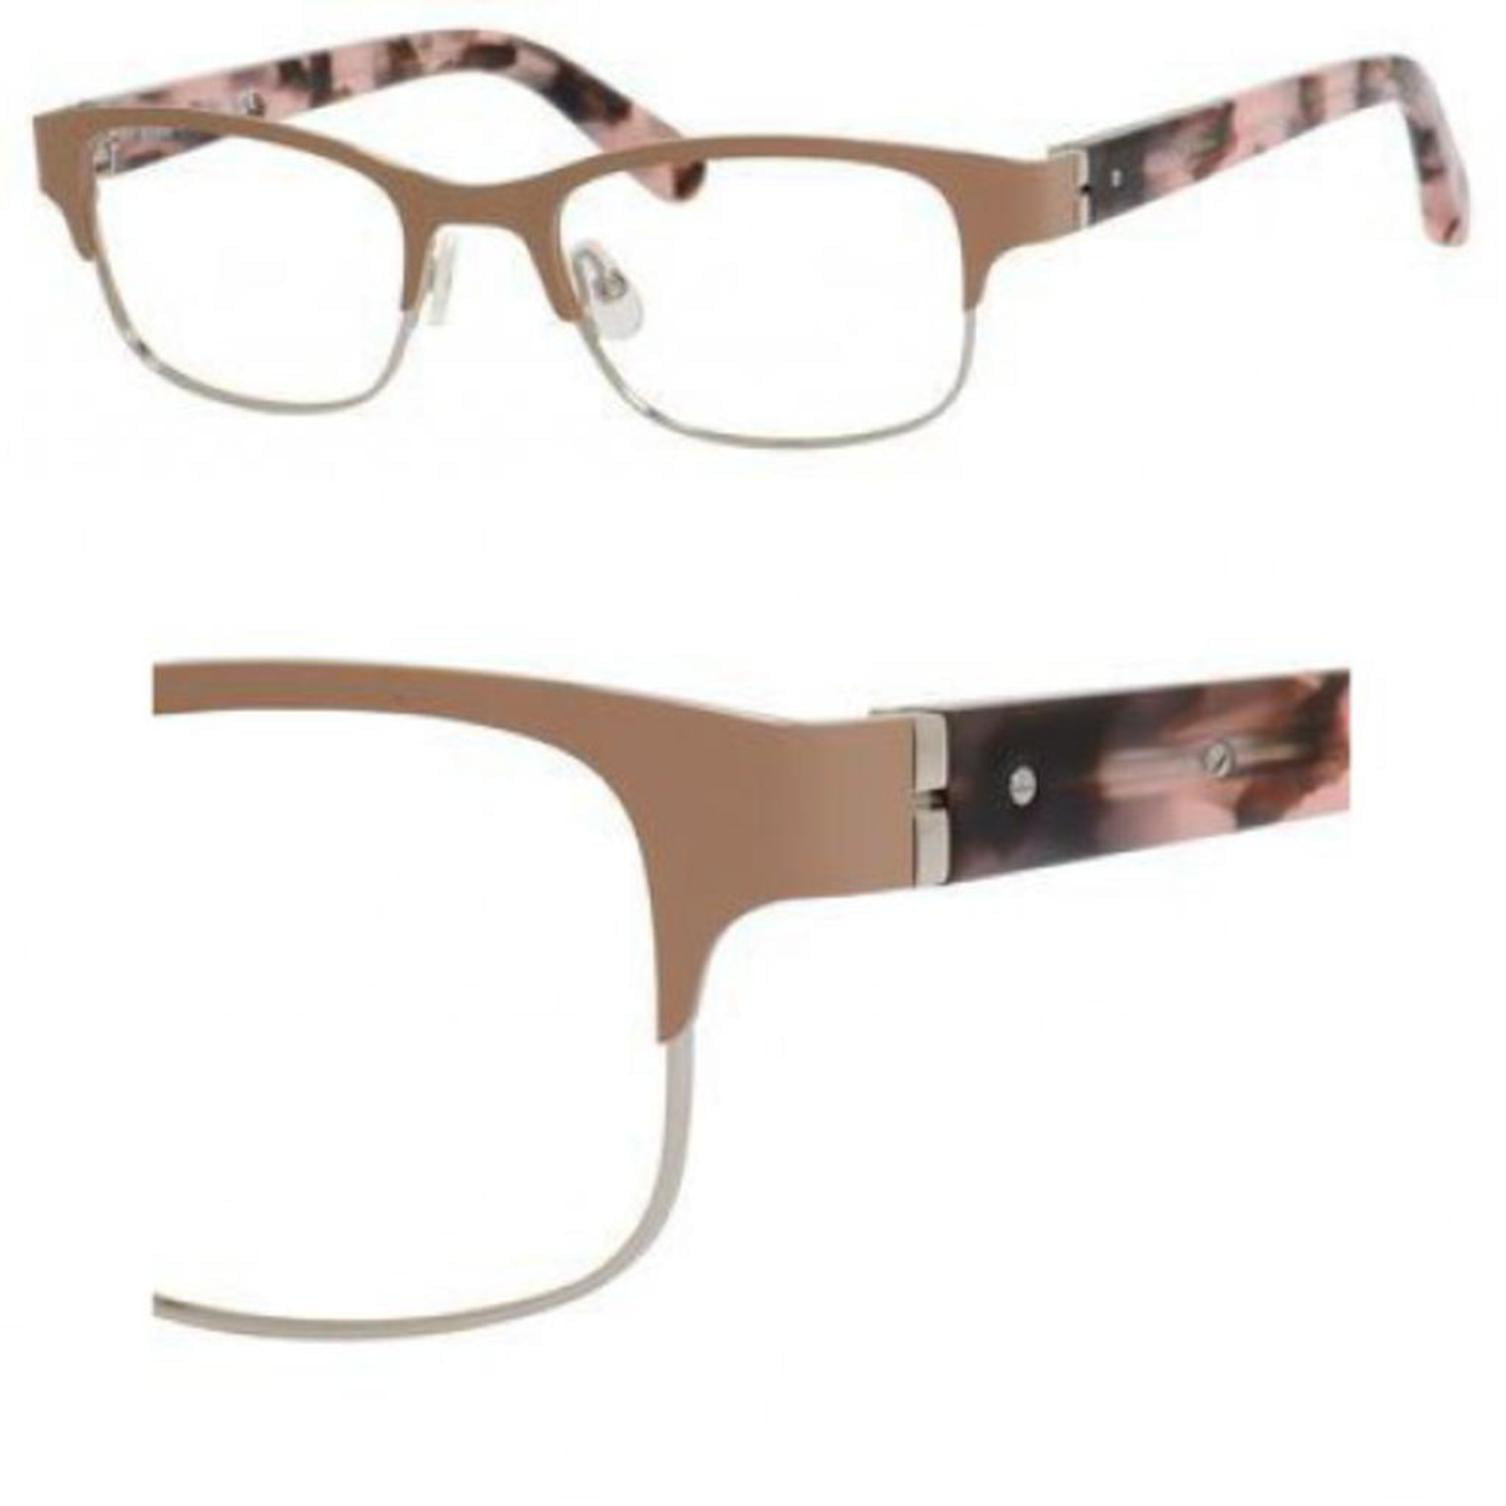 Rimless Eyeglasses Frames For Women My Xxx Hot Girl